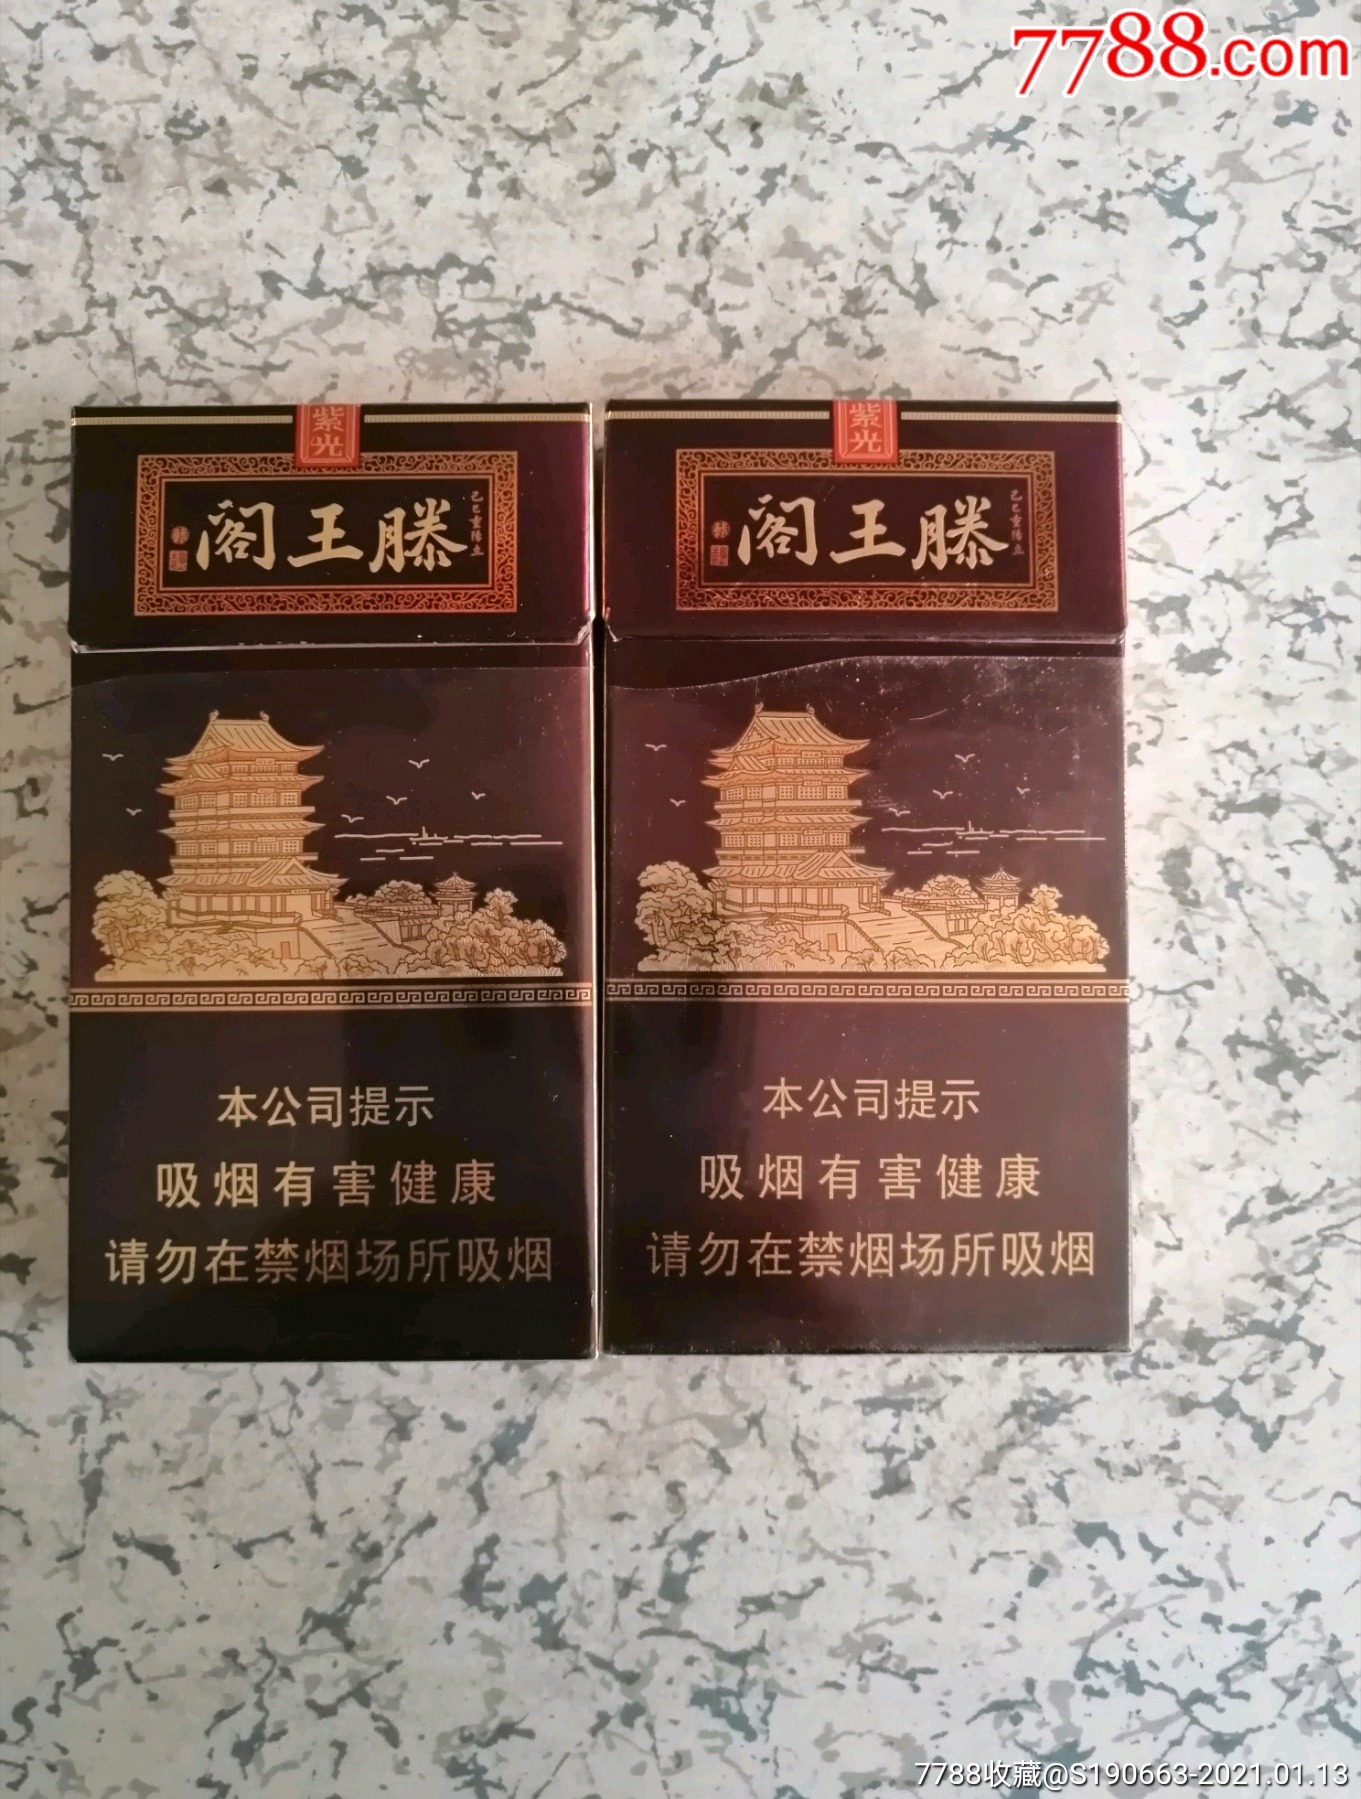 滕王阁香烟紫光价格图片